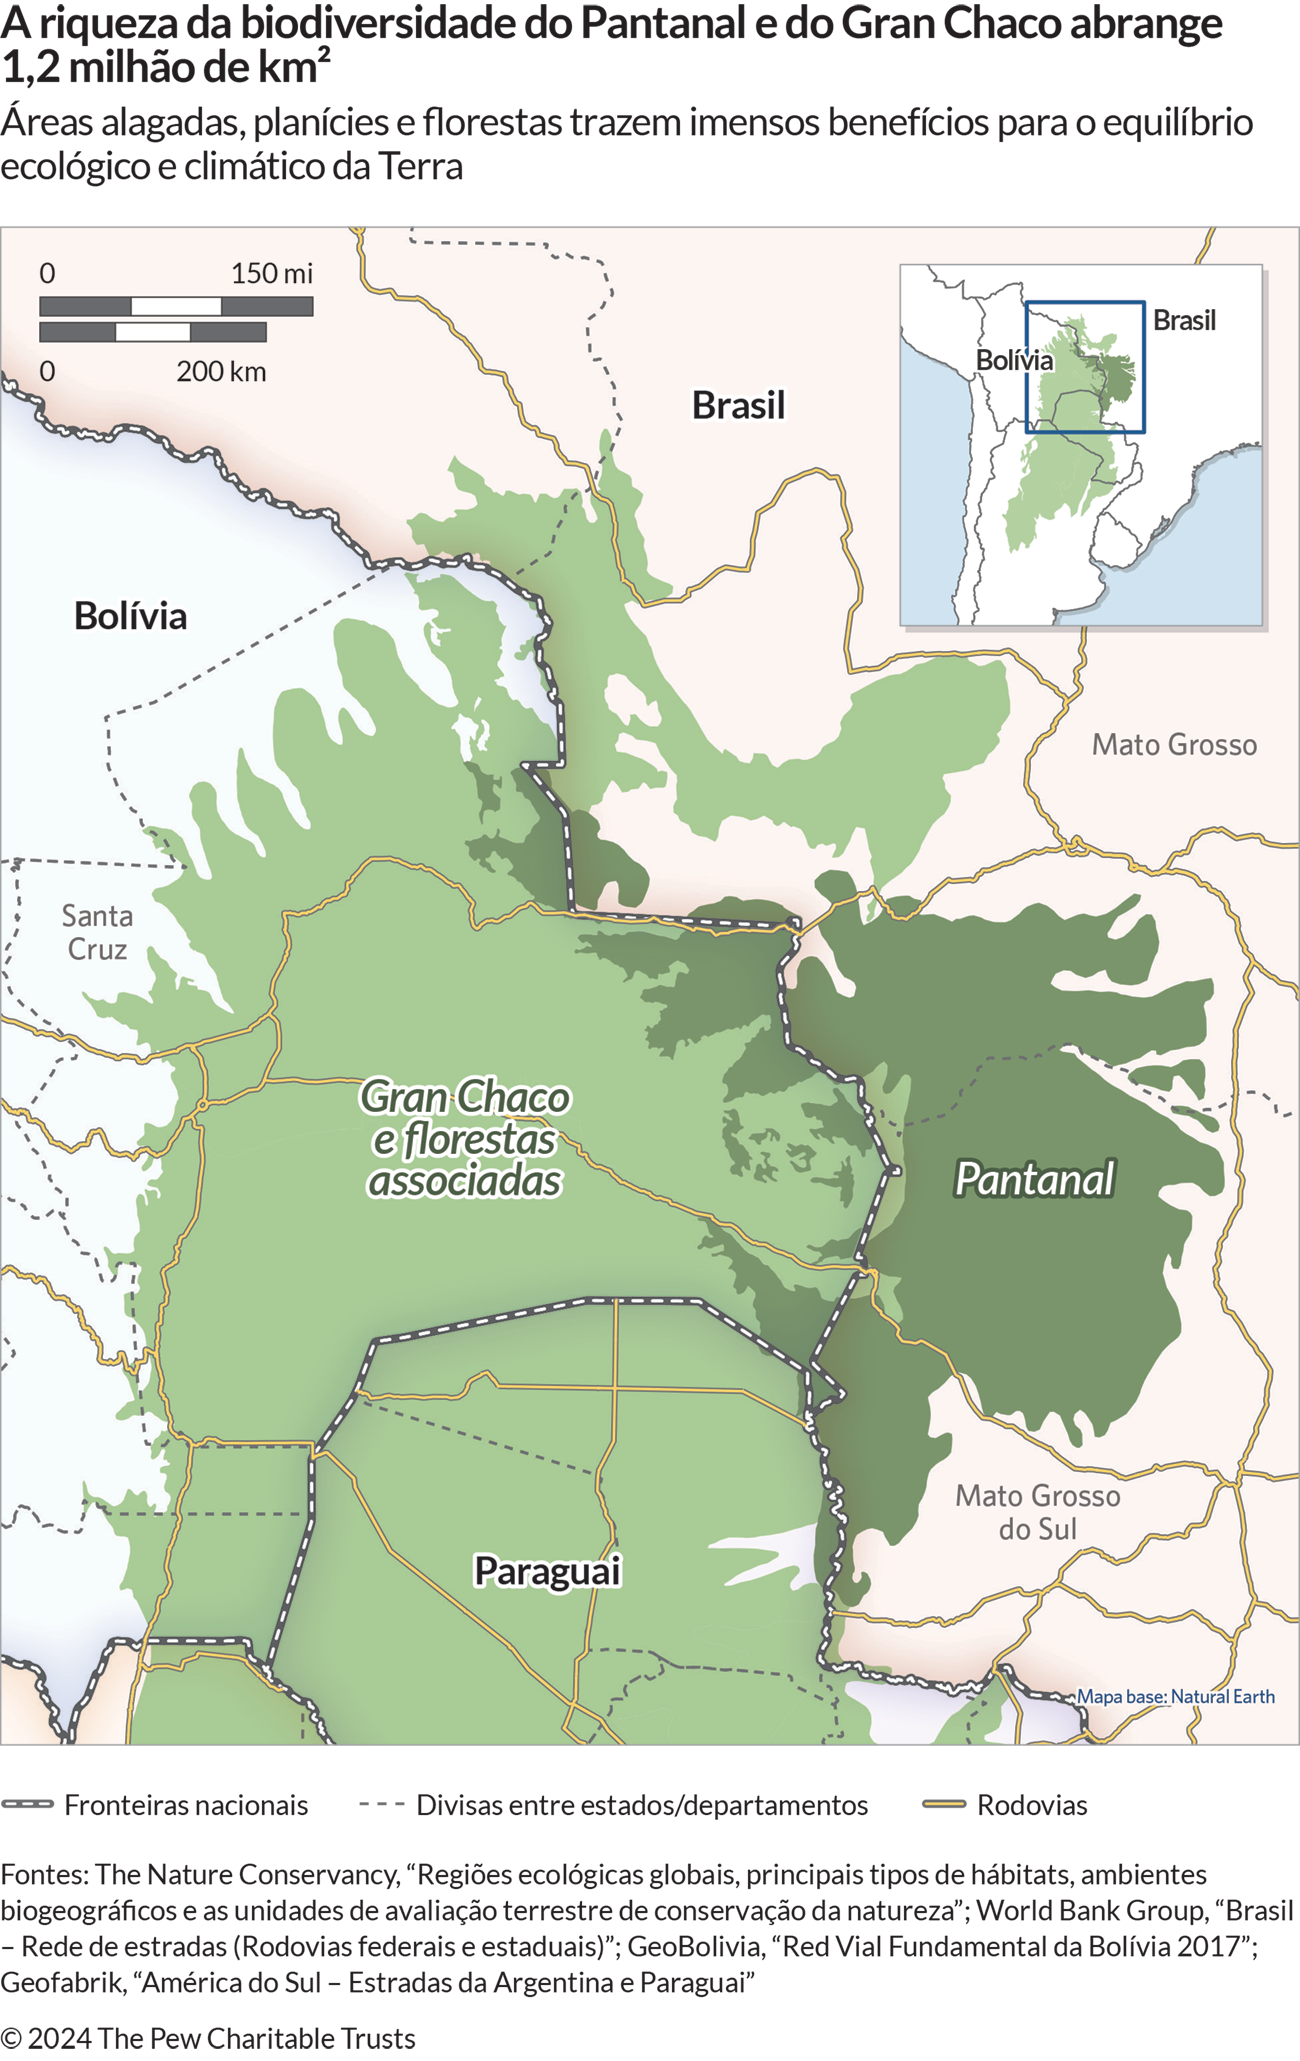 Um mapa mostra a região da América do Sul ao redor da fronteira entre Bolívia, Brasil e Paraguai. A área em verde-escuro à direita está marcada como “Pantanal”, e uma área maior, em verde mais claro, está indicada como “Gran Chaco e florestas associadas”. O mapa também mostra as principais rodovias e algumas divisas entre estados e departamentos do Brasil e da Bolívia. 